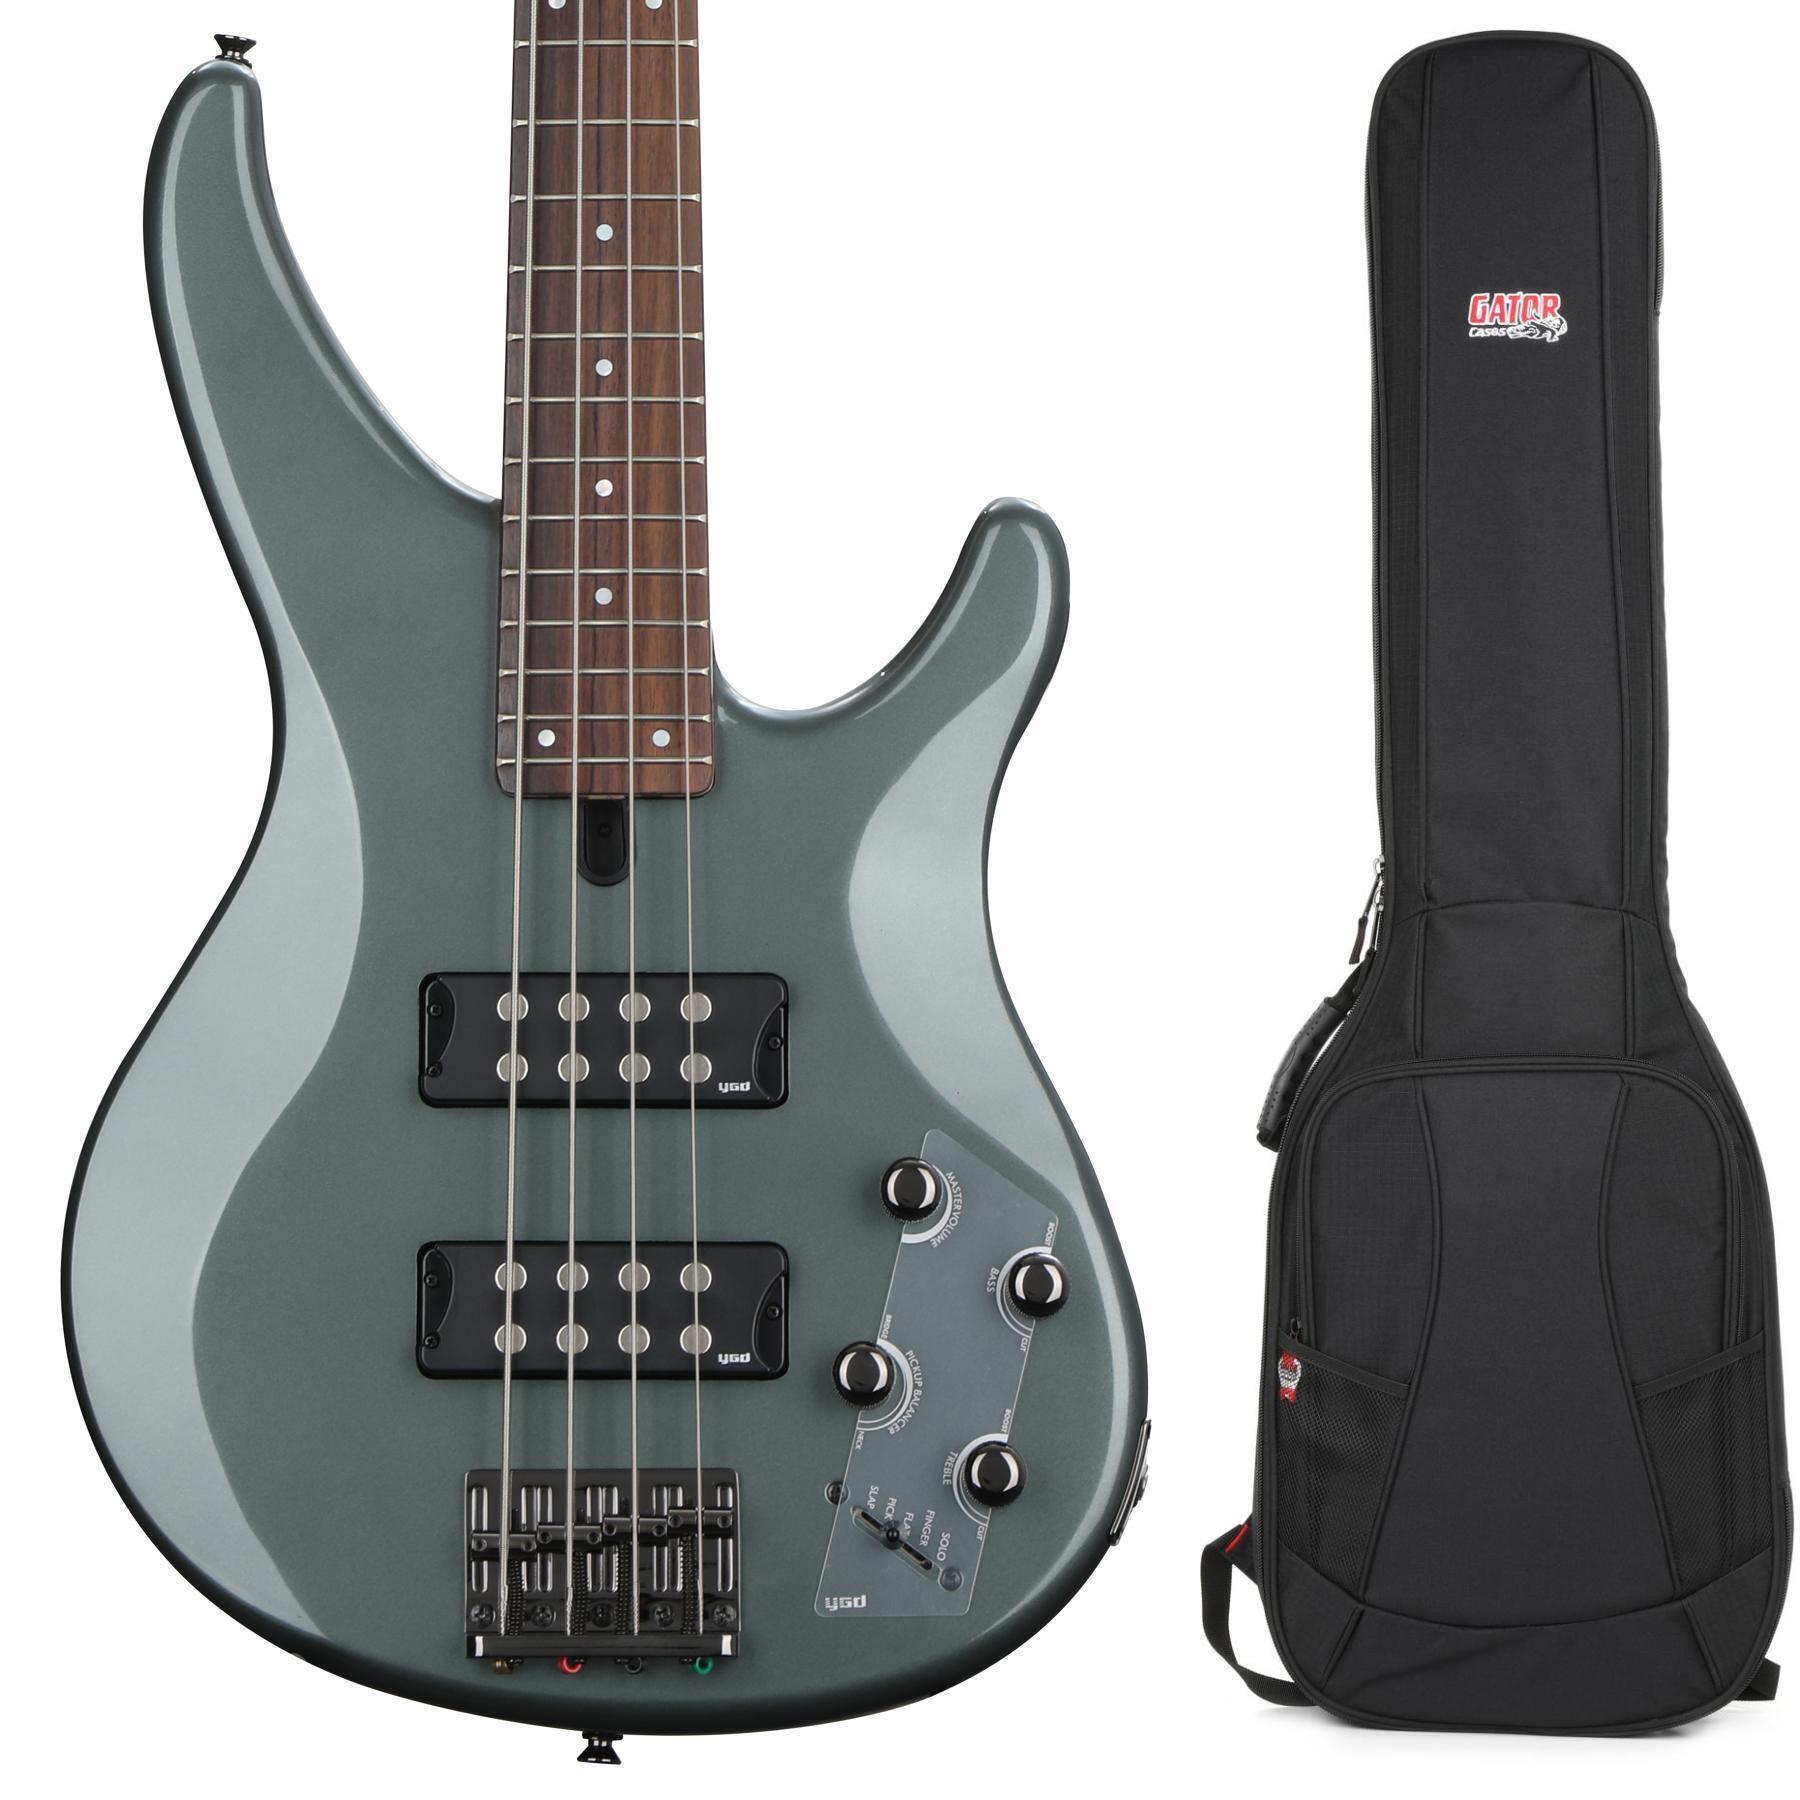 Yamaha TRBX304 Bass Guitar - Mist Green | Sweetwater